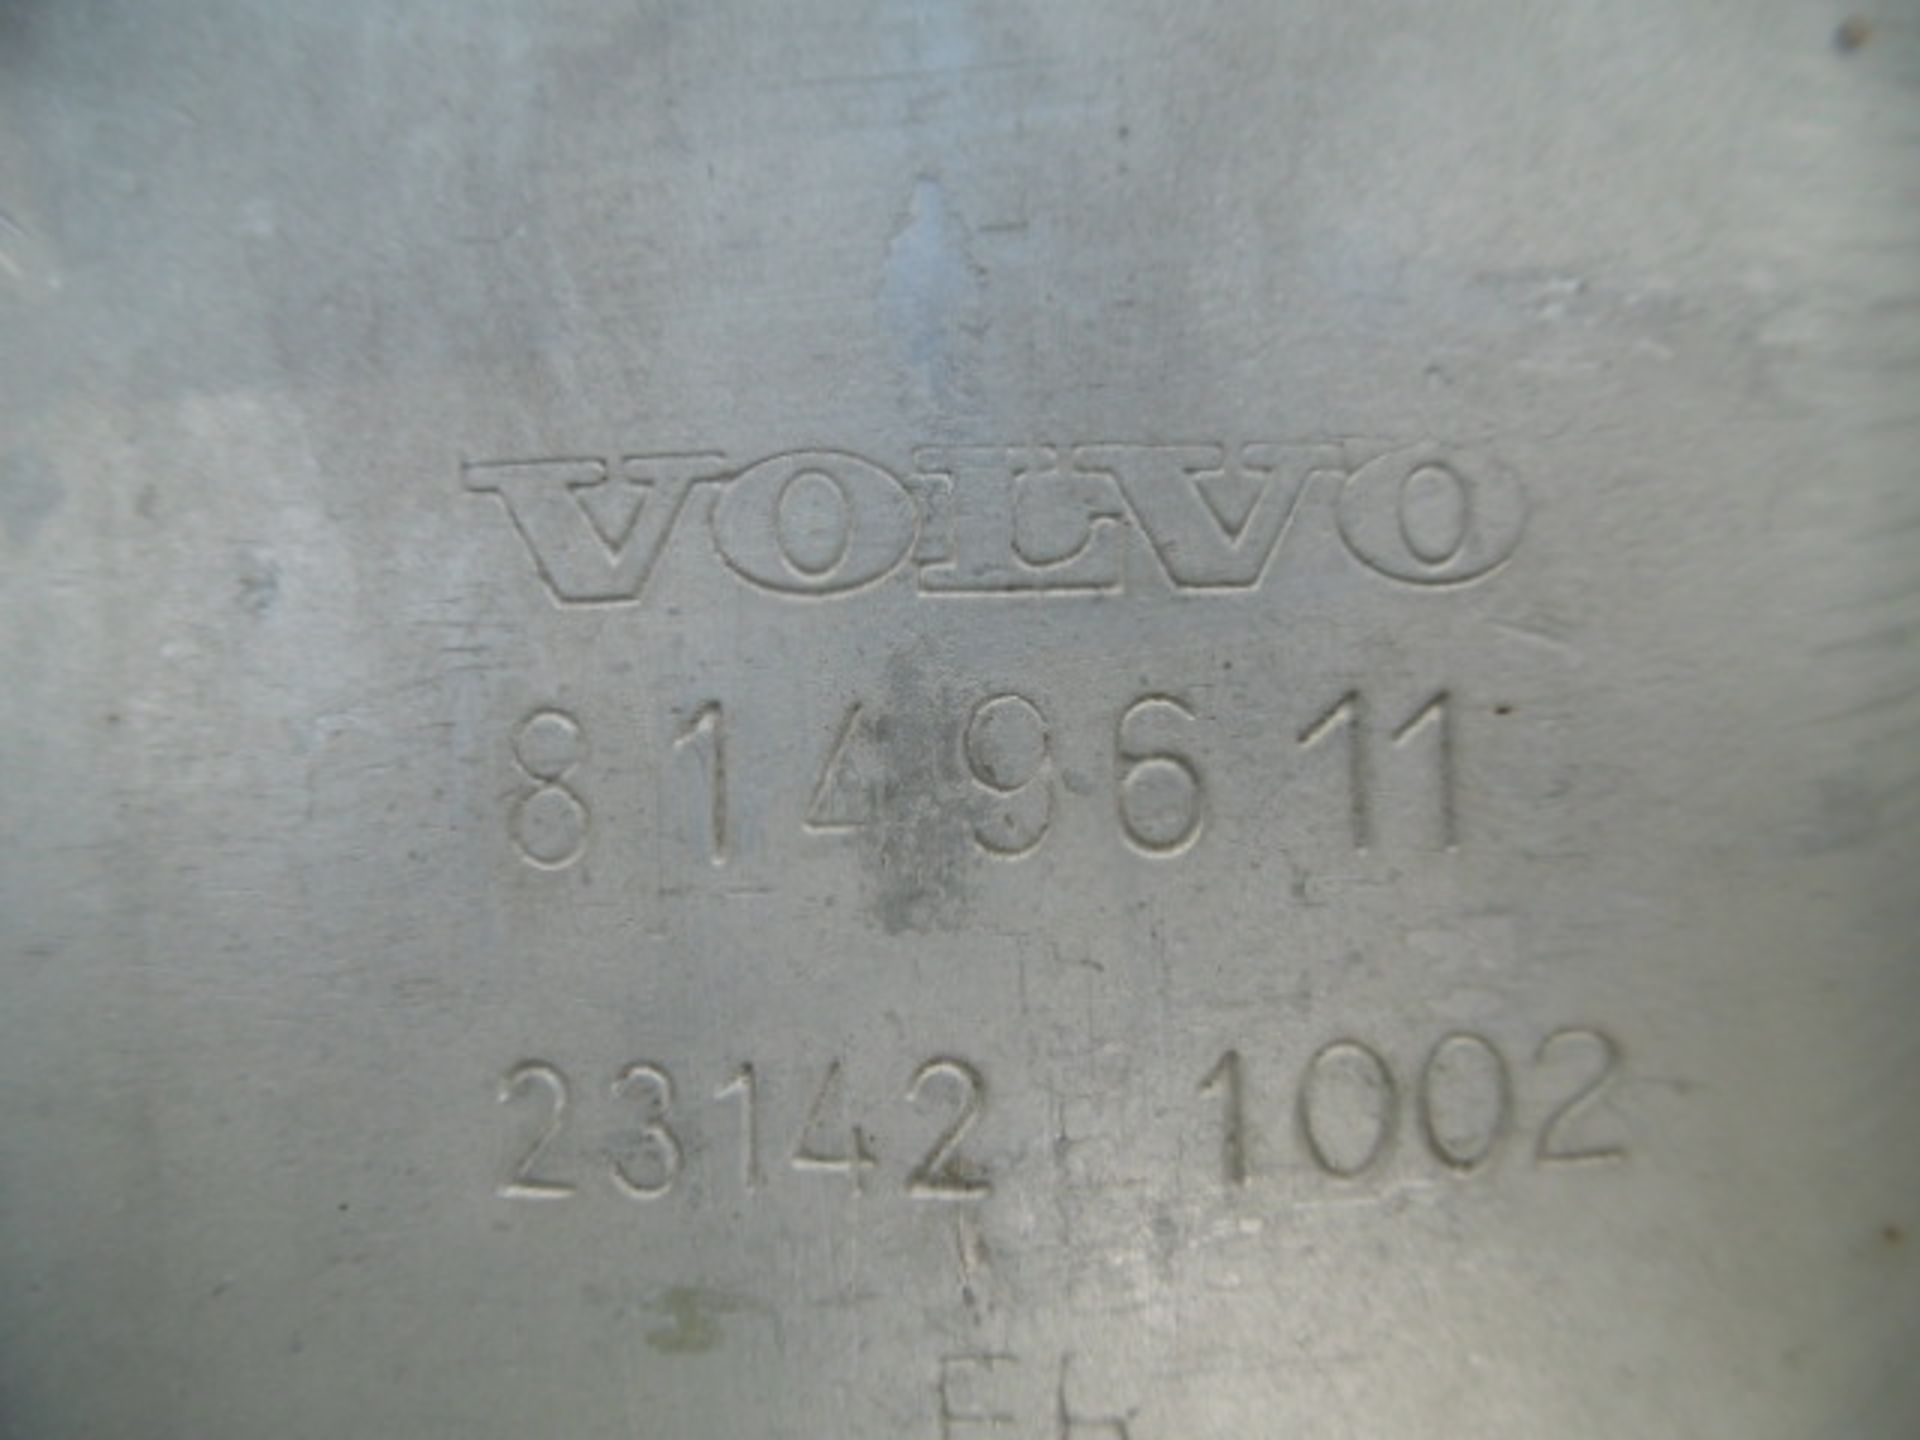 Volvo Exhaust Muffler - Bild 4 aus 4